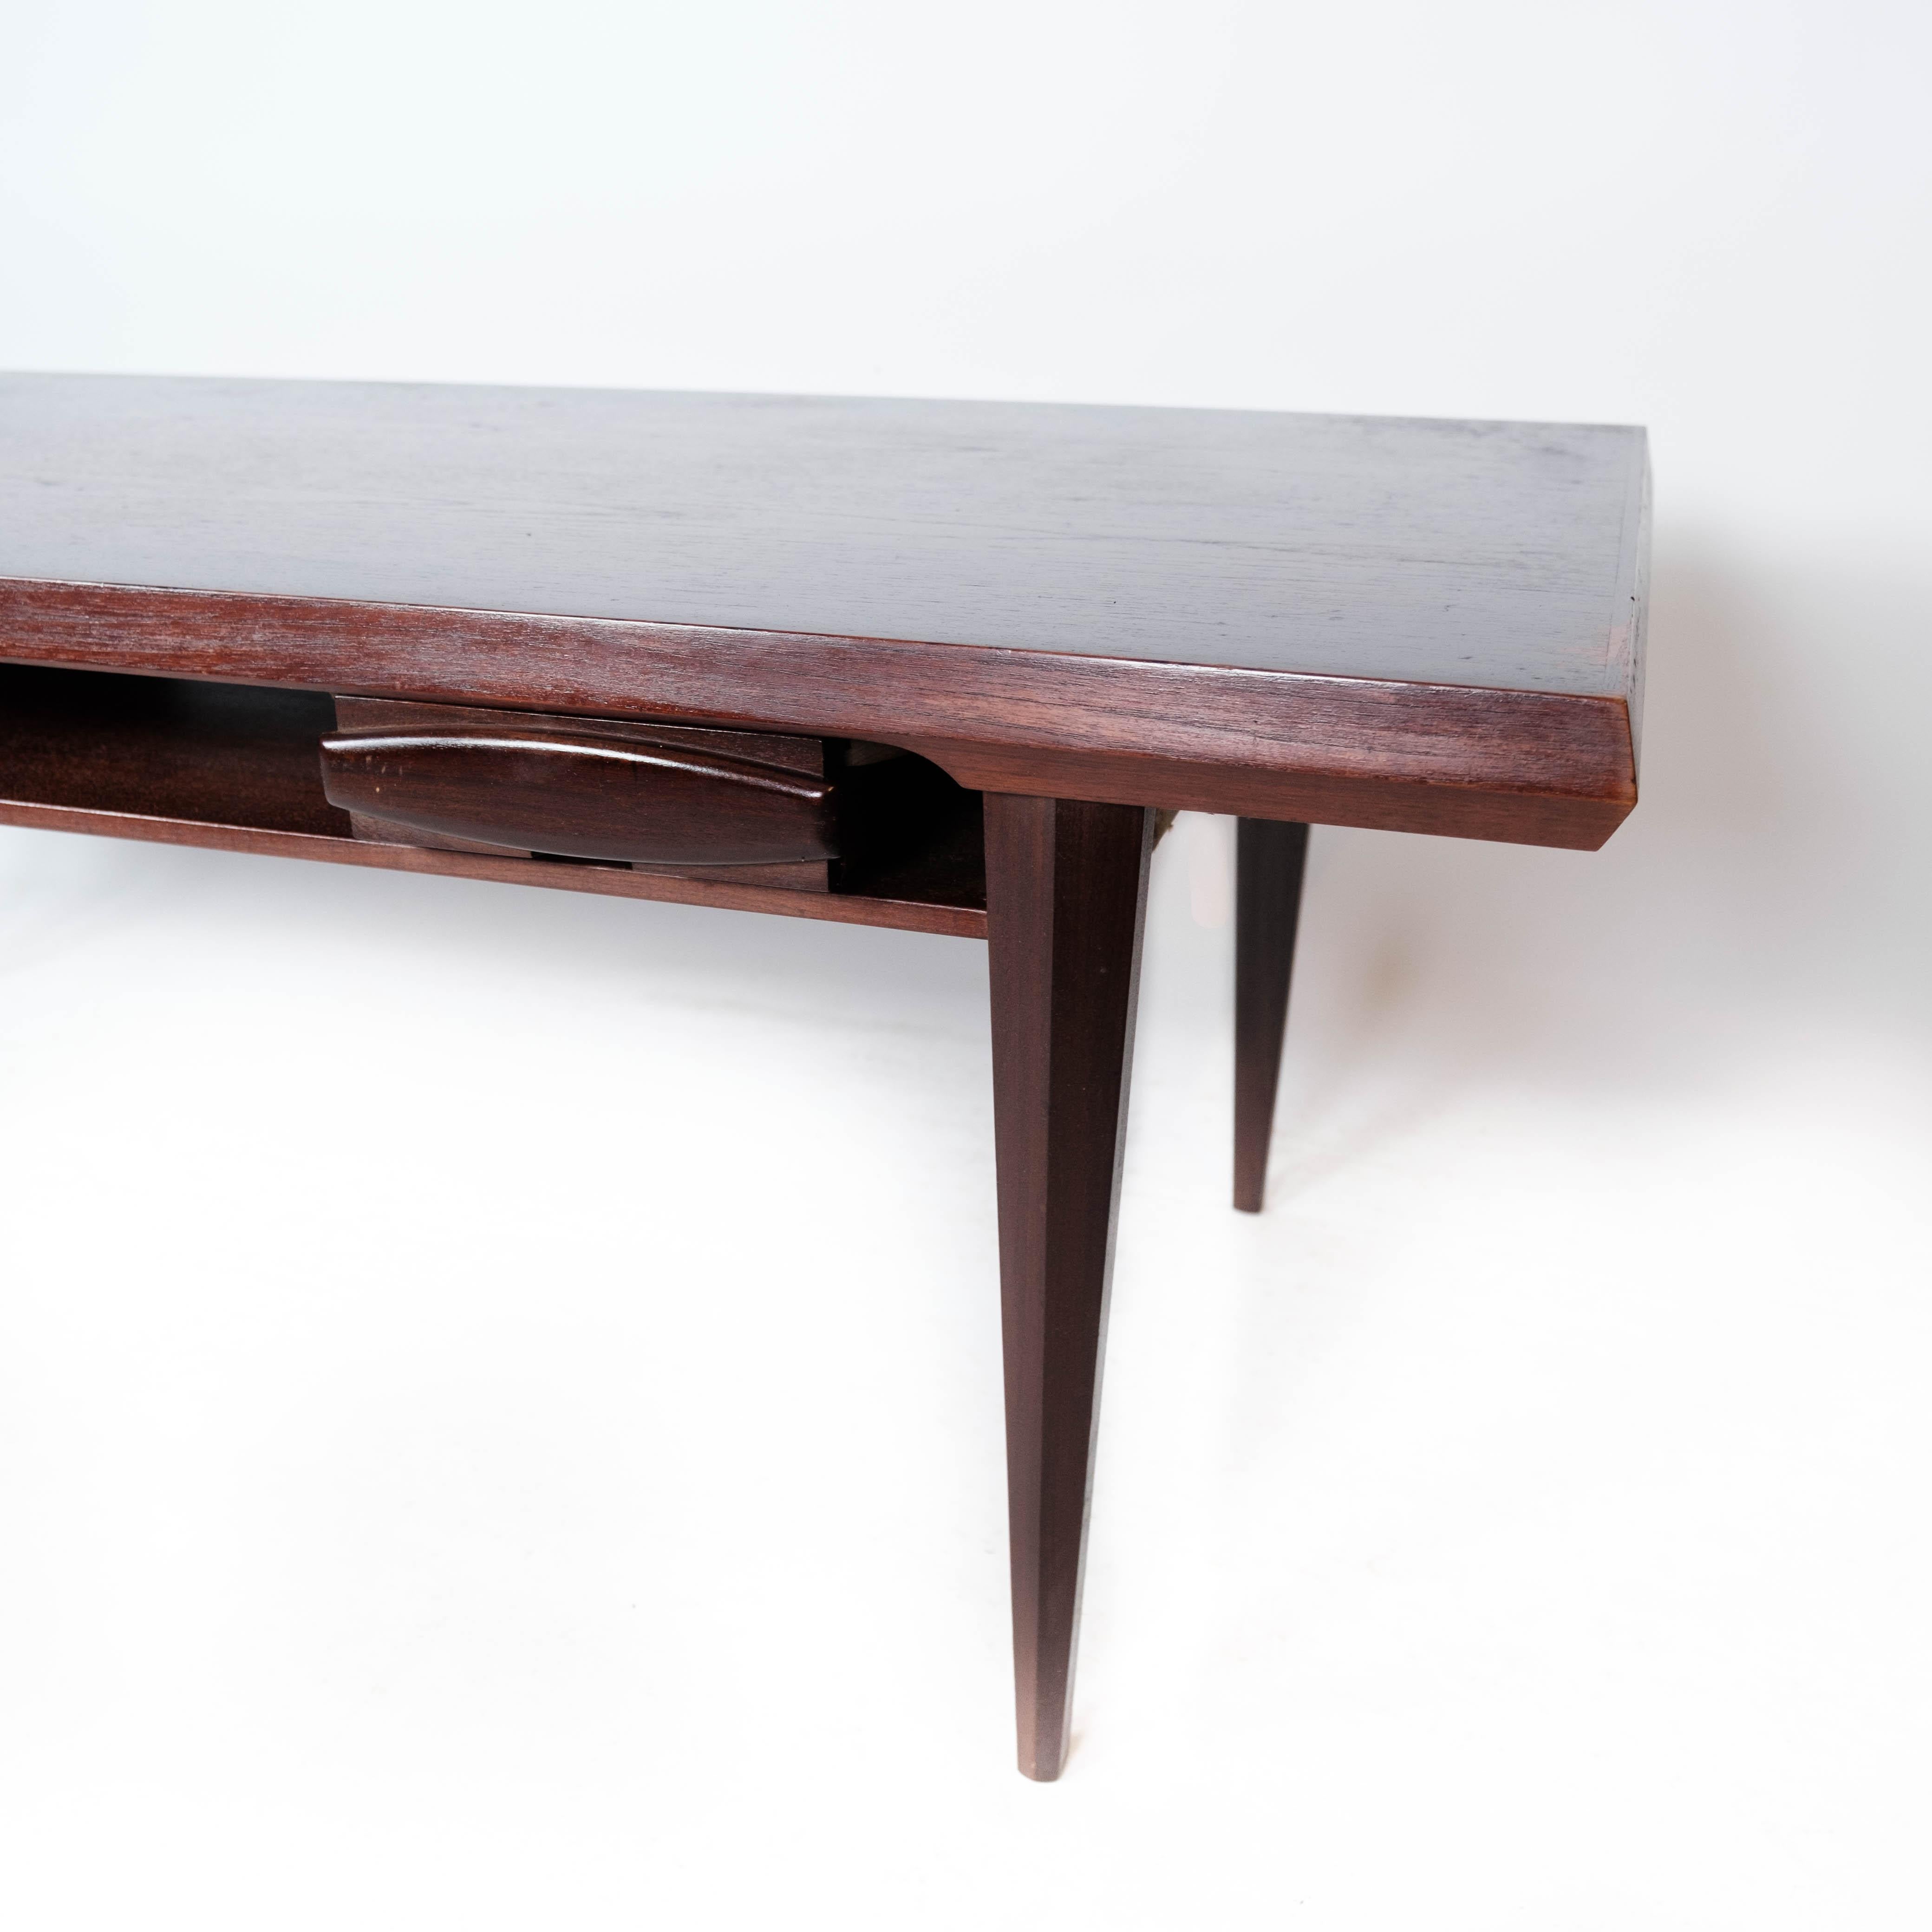 La table basse fabriquée en teck et reprenant le design danois des années 1960 est un remarquable mélange d'élégance et de fonctionnalité.

Le teck, réputé pour sa durabilité et ses tons chauds, confère une certaine sophistication à la table. Les